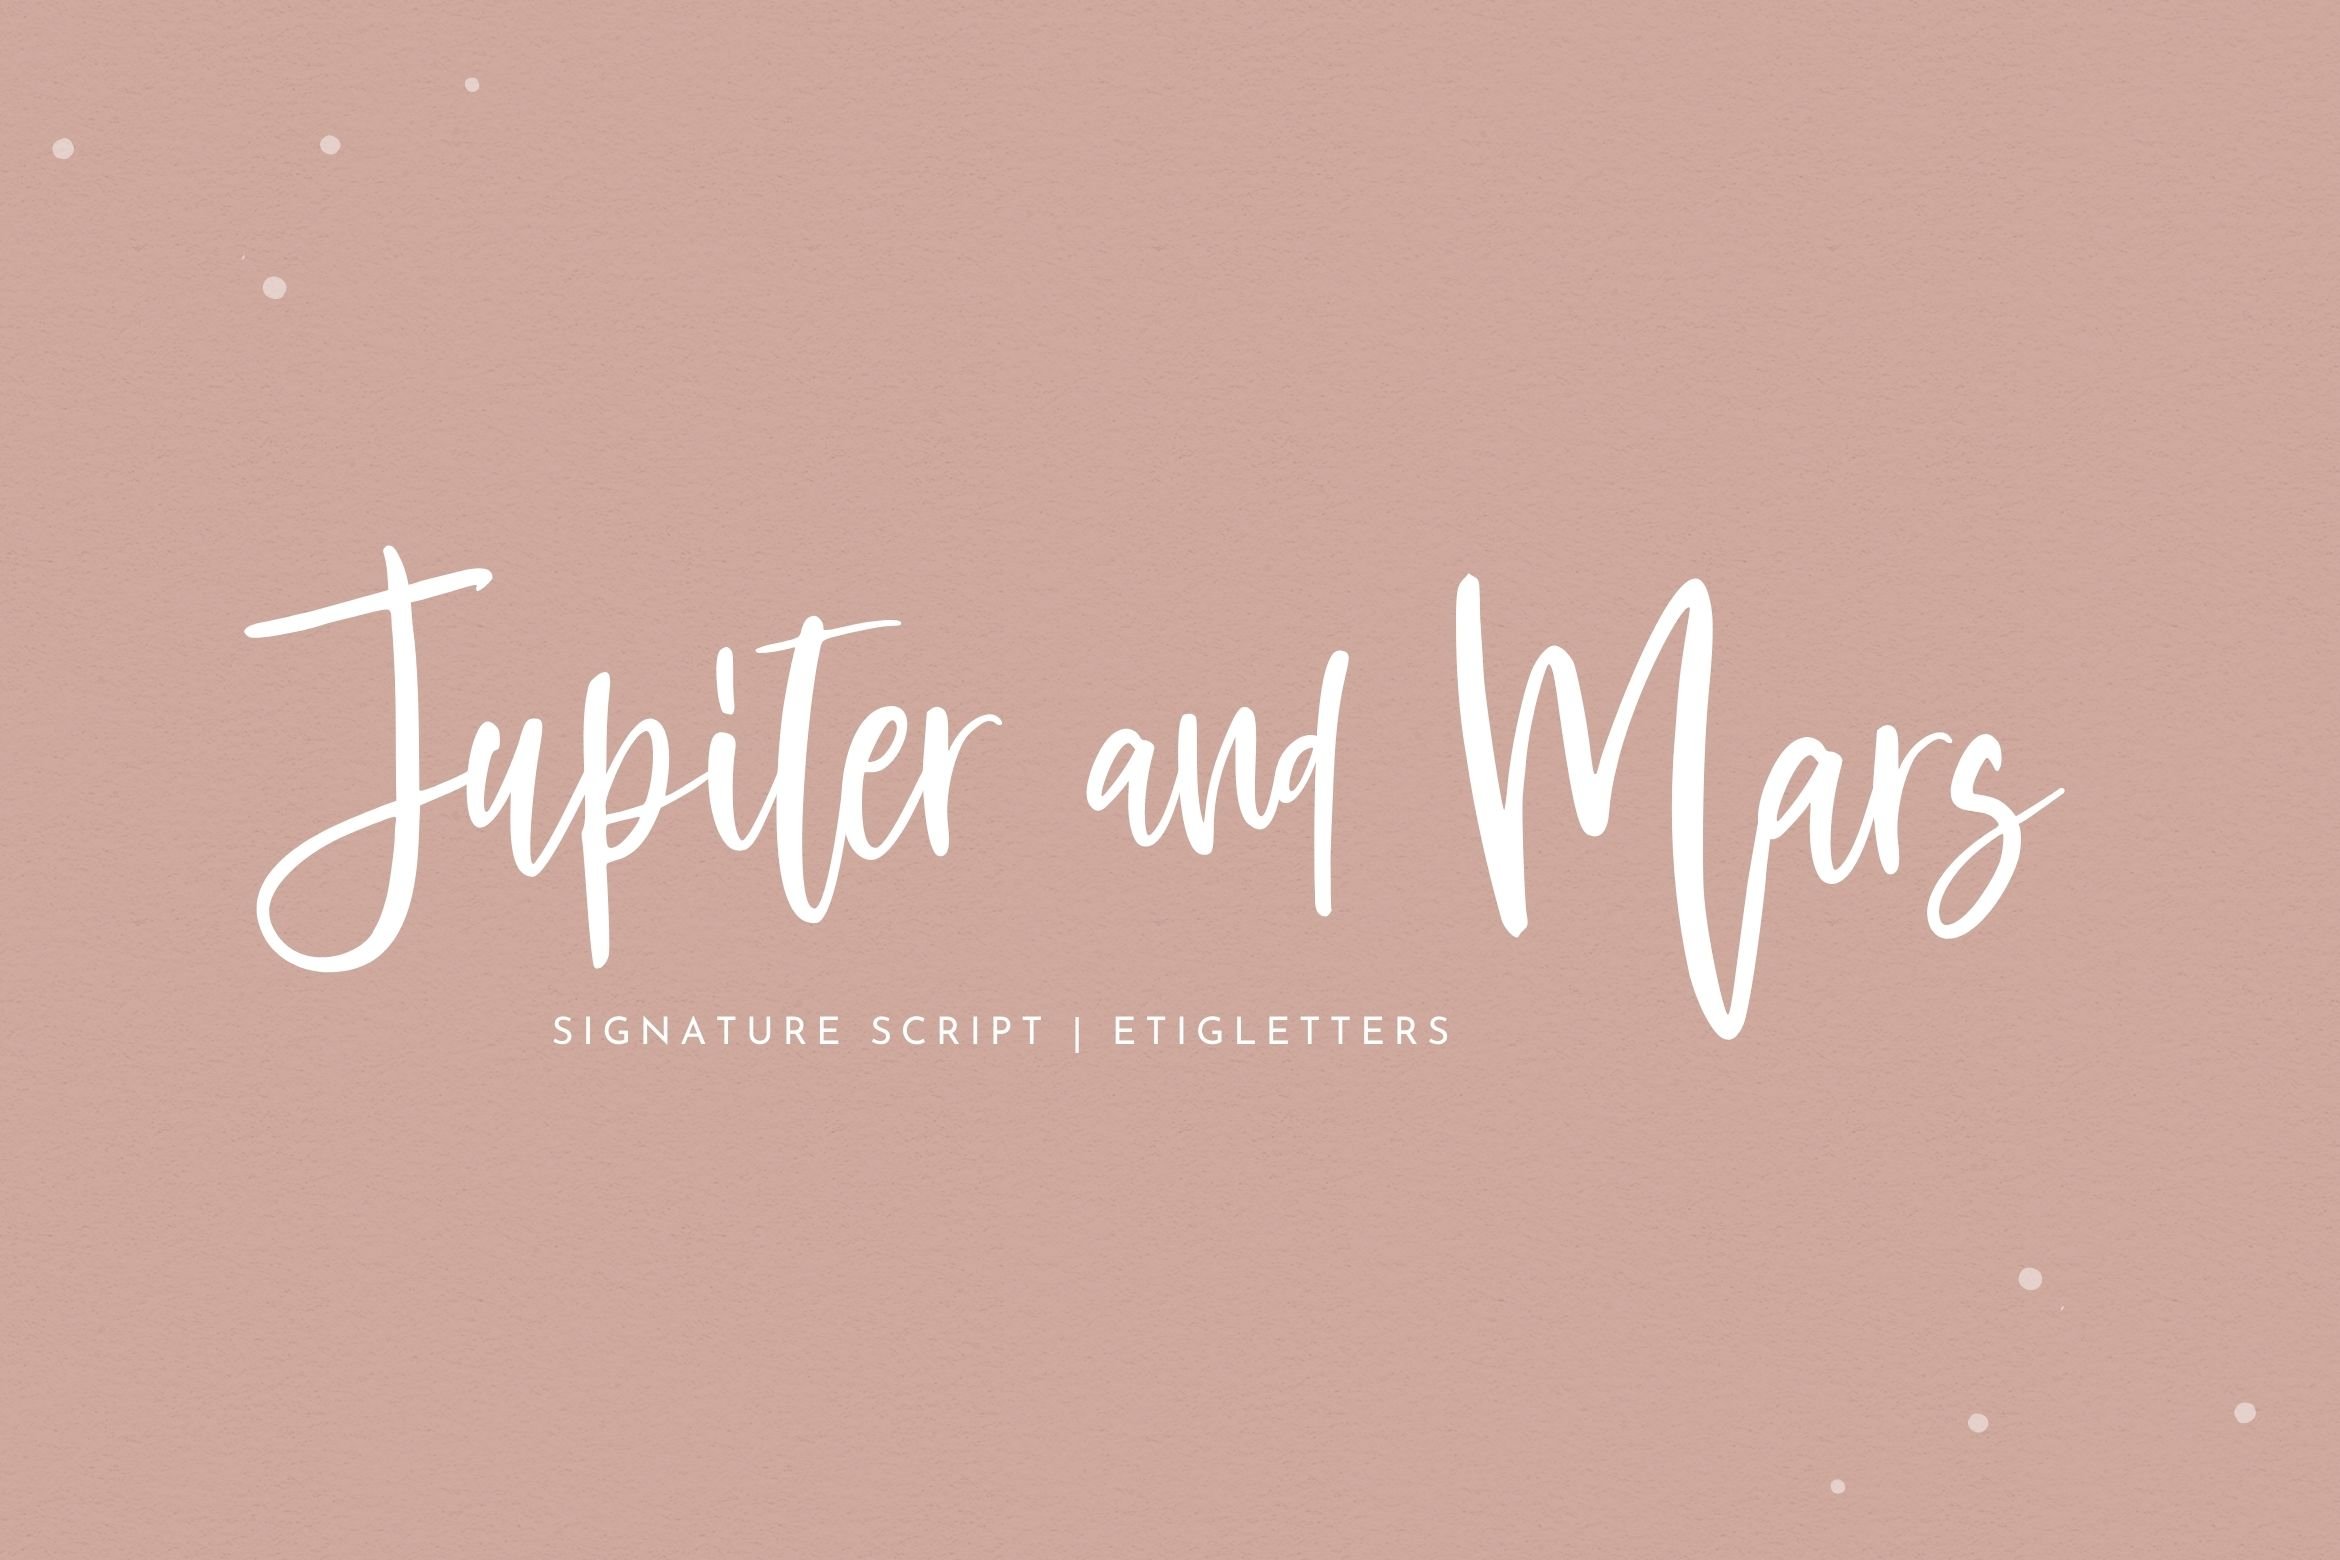 Jupiter and Mars Script Font cover image.